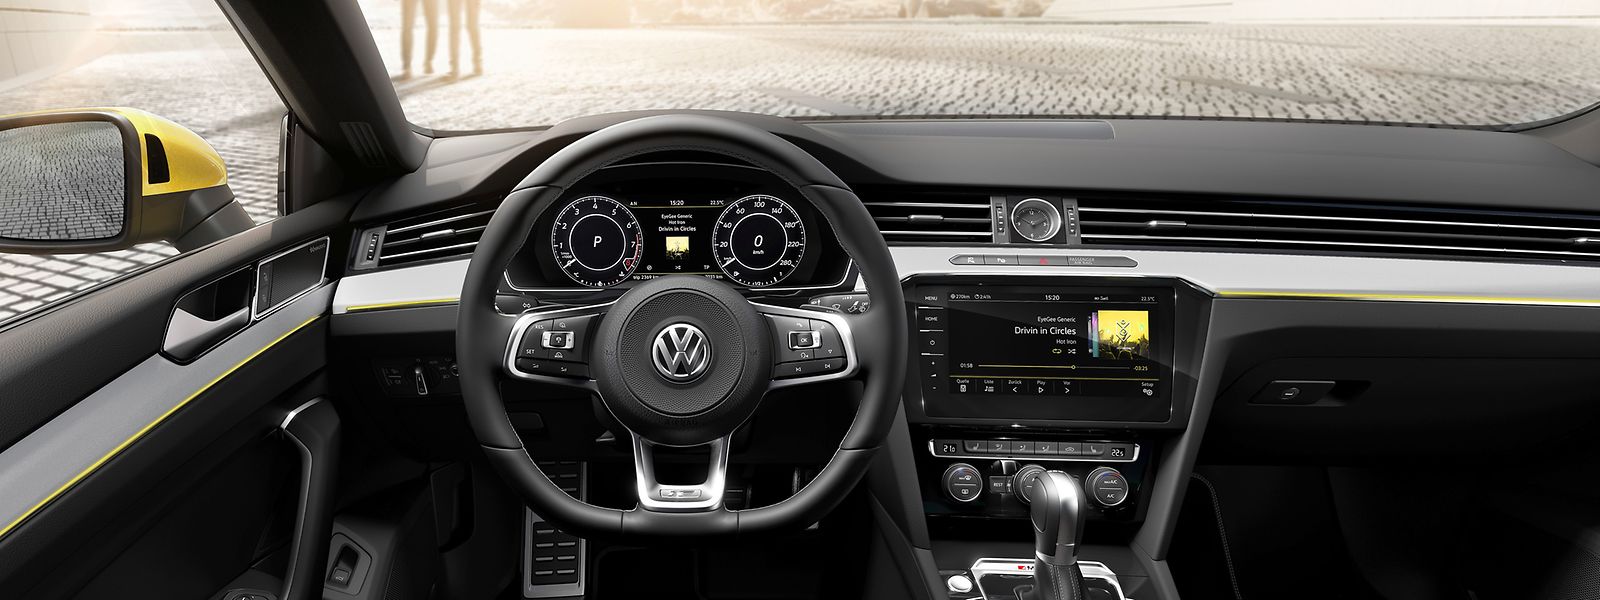 Der neue Volkswagen Arteon. Das Cockpit präsentiert sich sachlich und aufgeräumt.